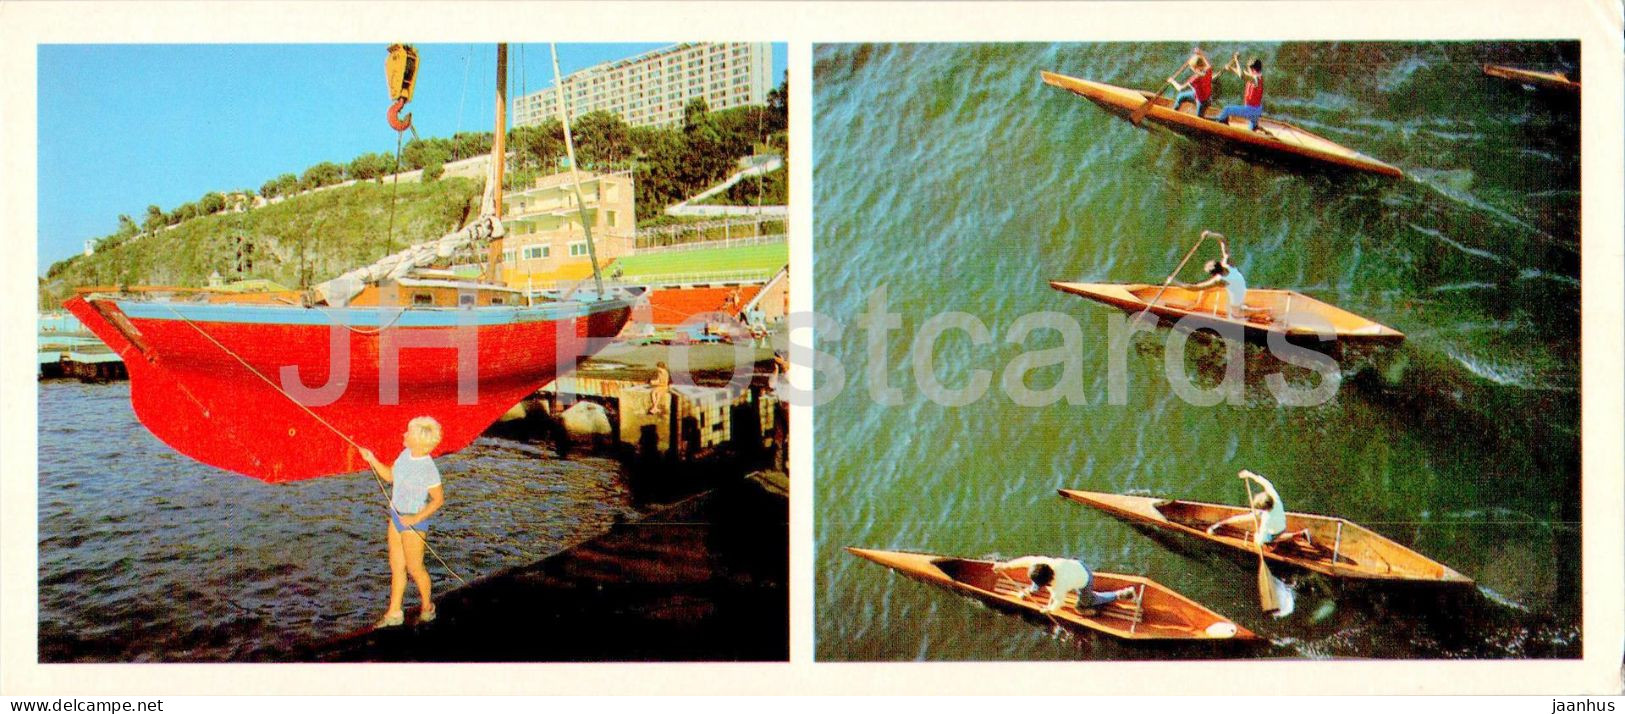 Vladivostok - Water Sport - Boat - Yacht - Canoe - 1981 - Russia USSR - Unused - Russland